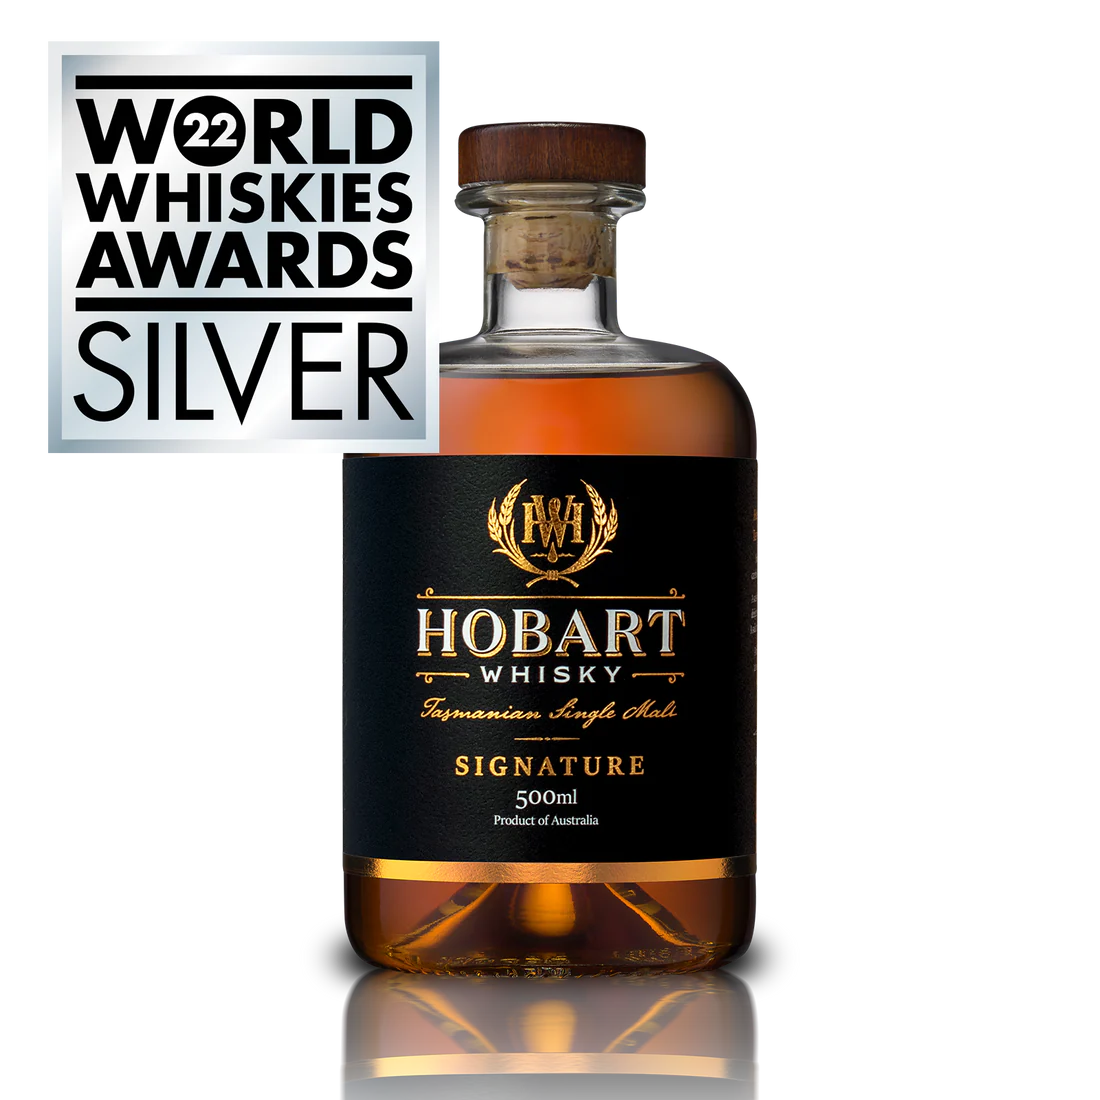 Hobart Whisky